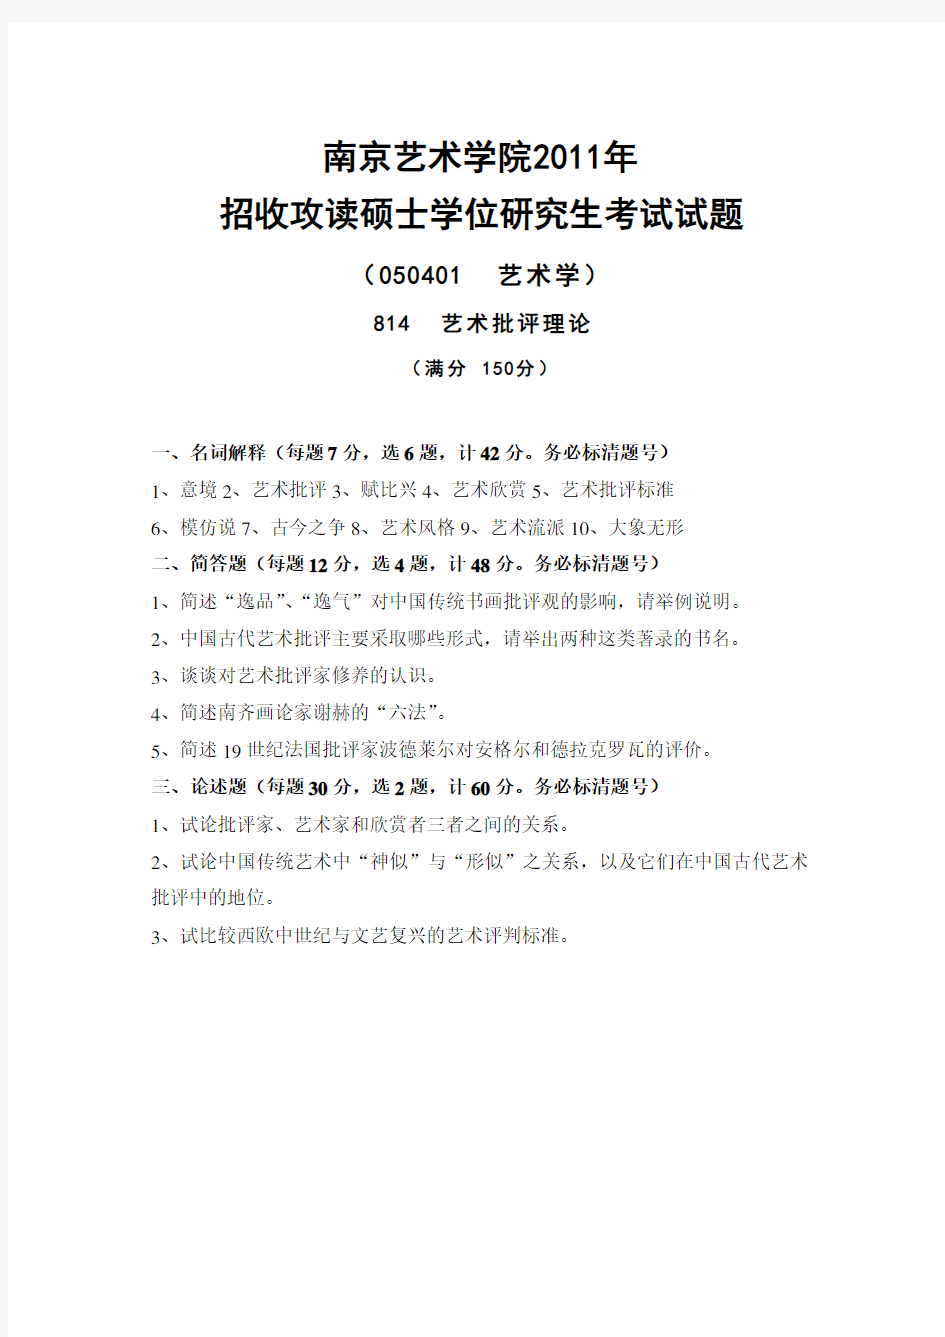 南艺南京艺术学院考研资料_814艺术批评理论2011-2013年真题